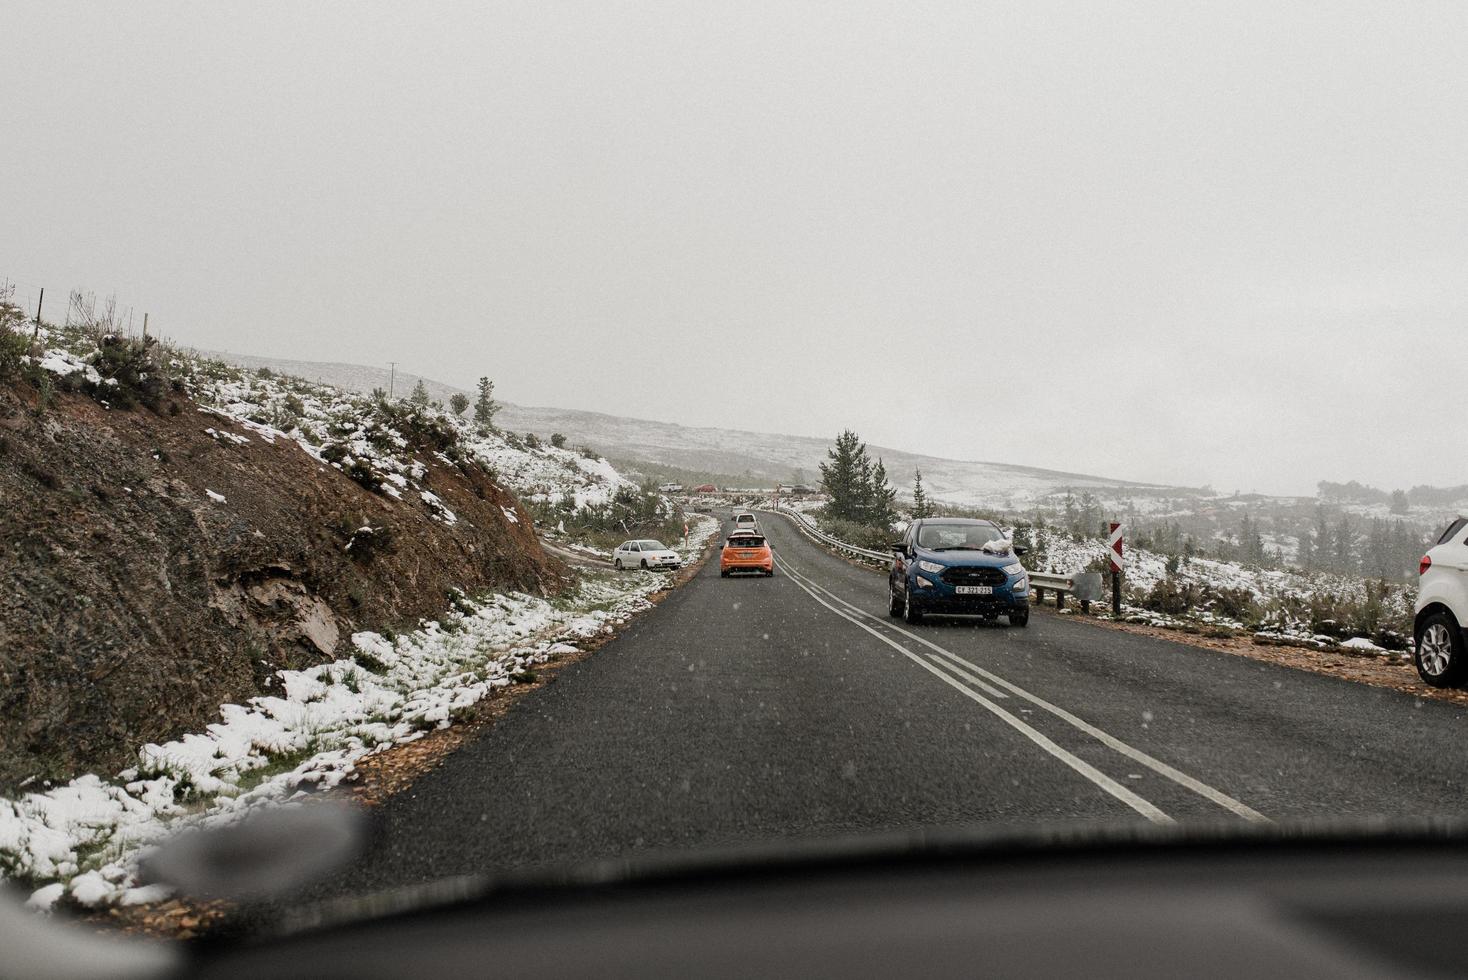 città del capo, sud africa, 2020 - auto in autostrada mentre cade la neve foto